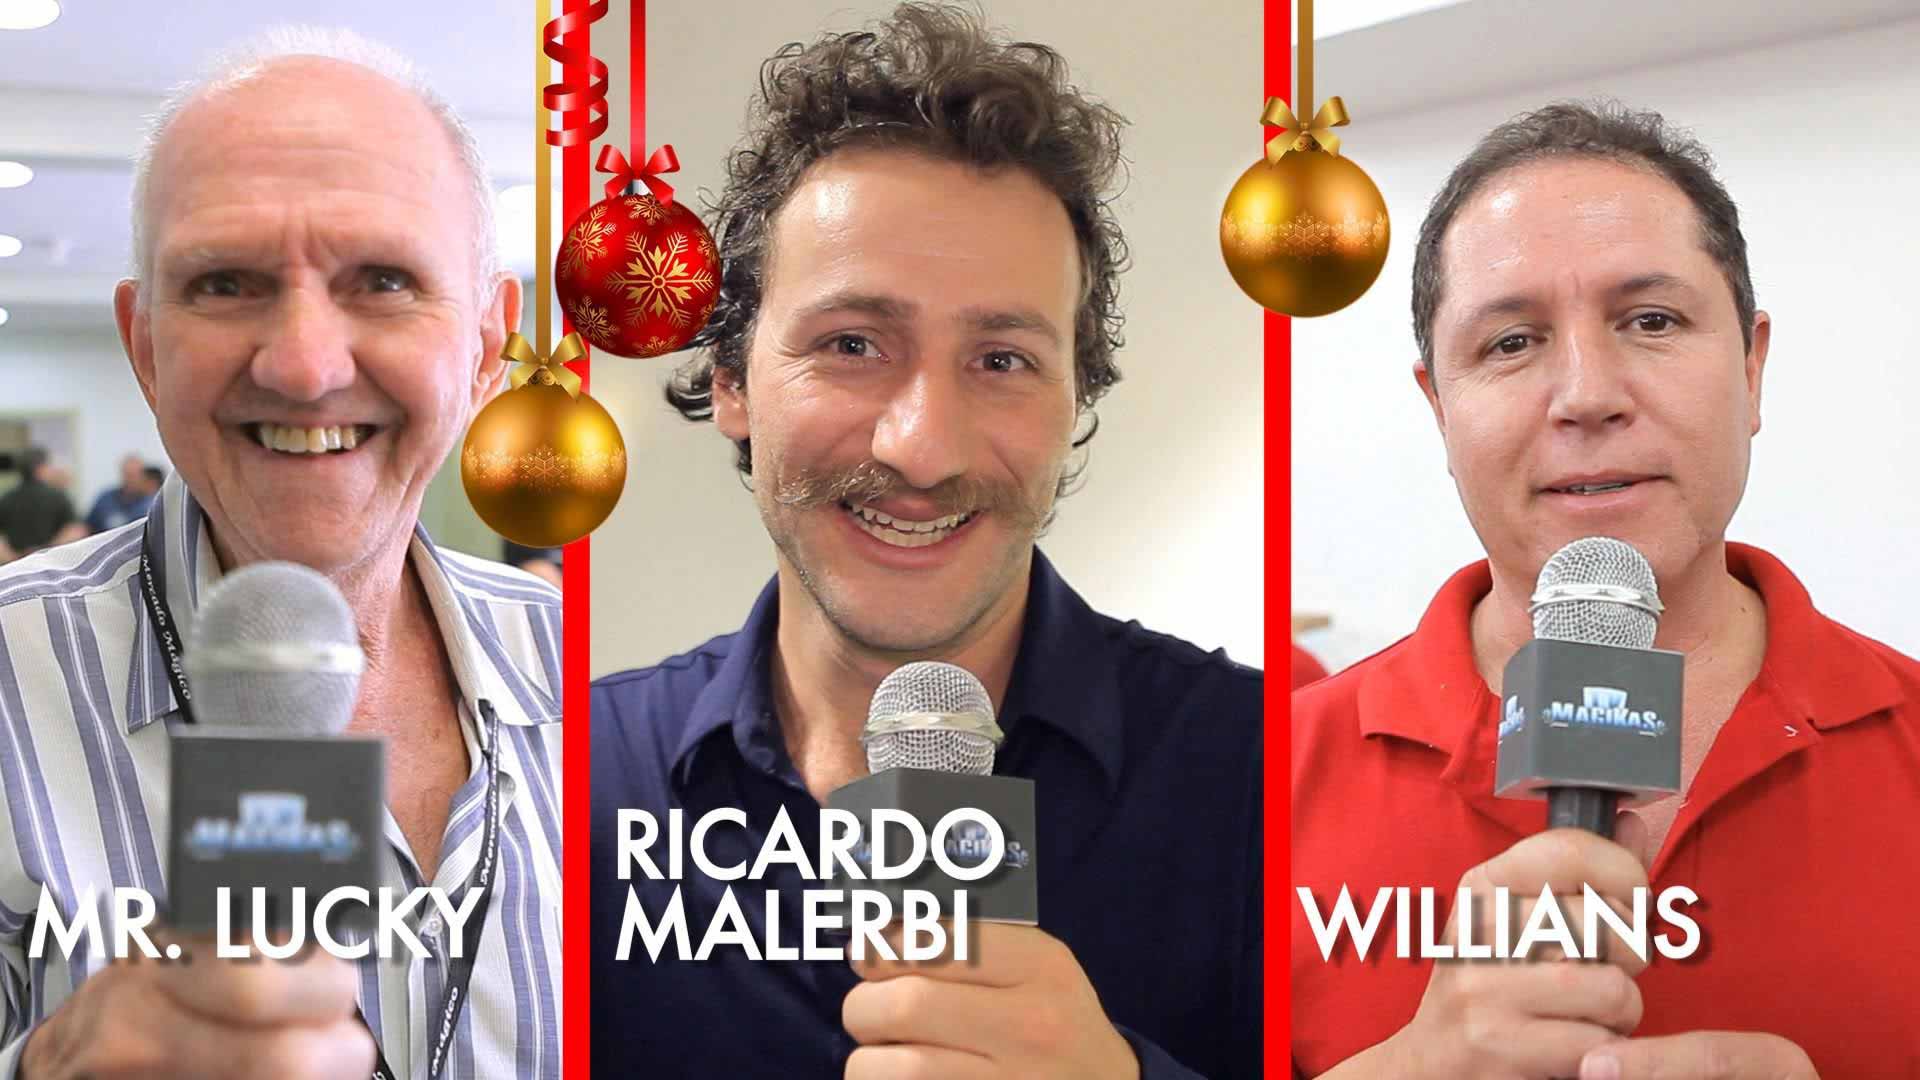 Ricardo Malerbi, Willians (Magi) e Mr. Luck em A mágica em 2015